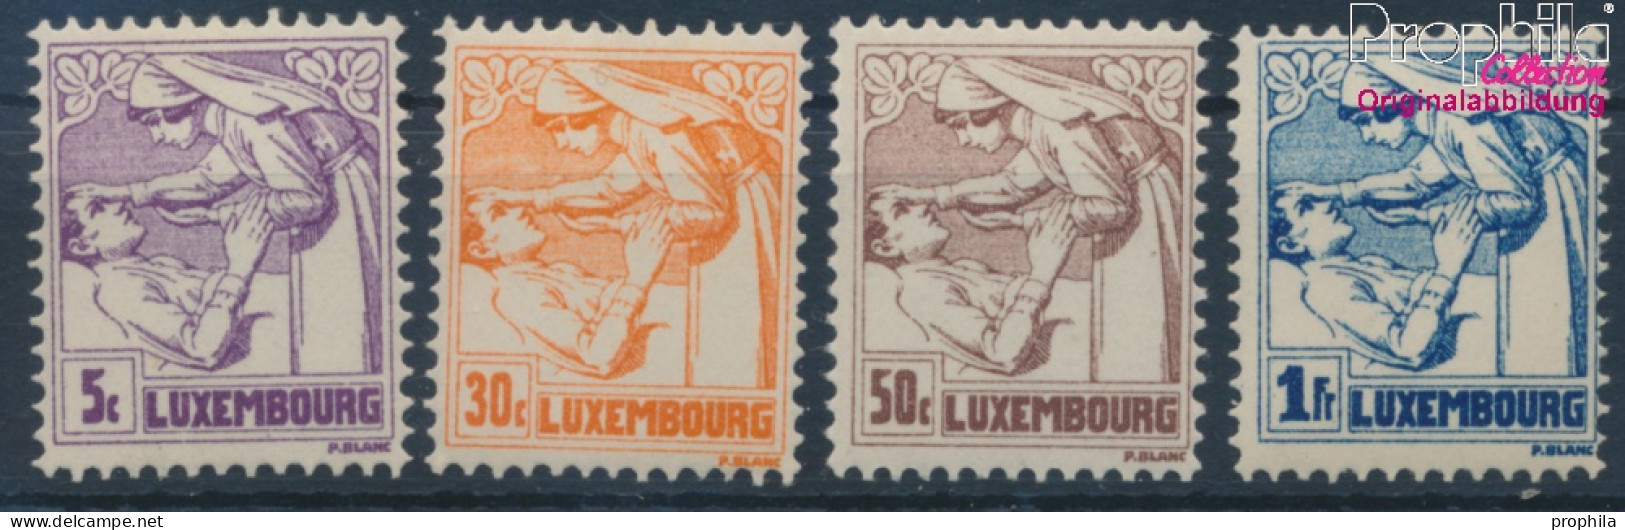 Luxemburg 157-160 (kompl.Ausg.) Postfrisch 1925 Tuberkulose (10363339 - Nuovi